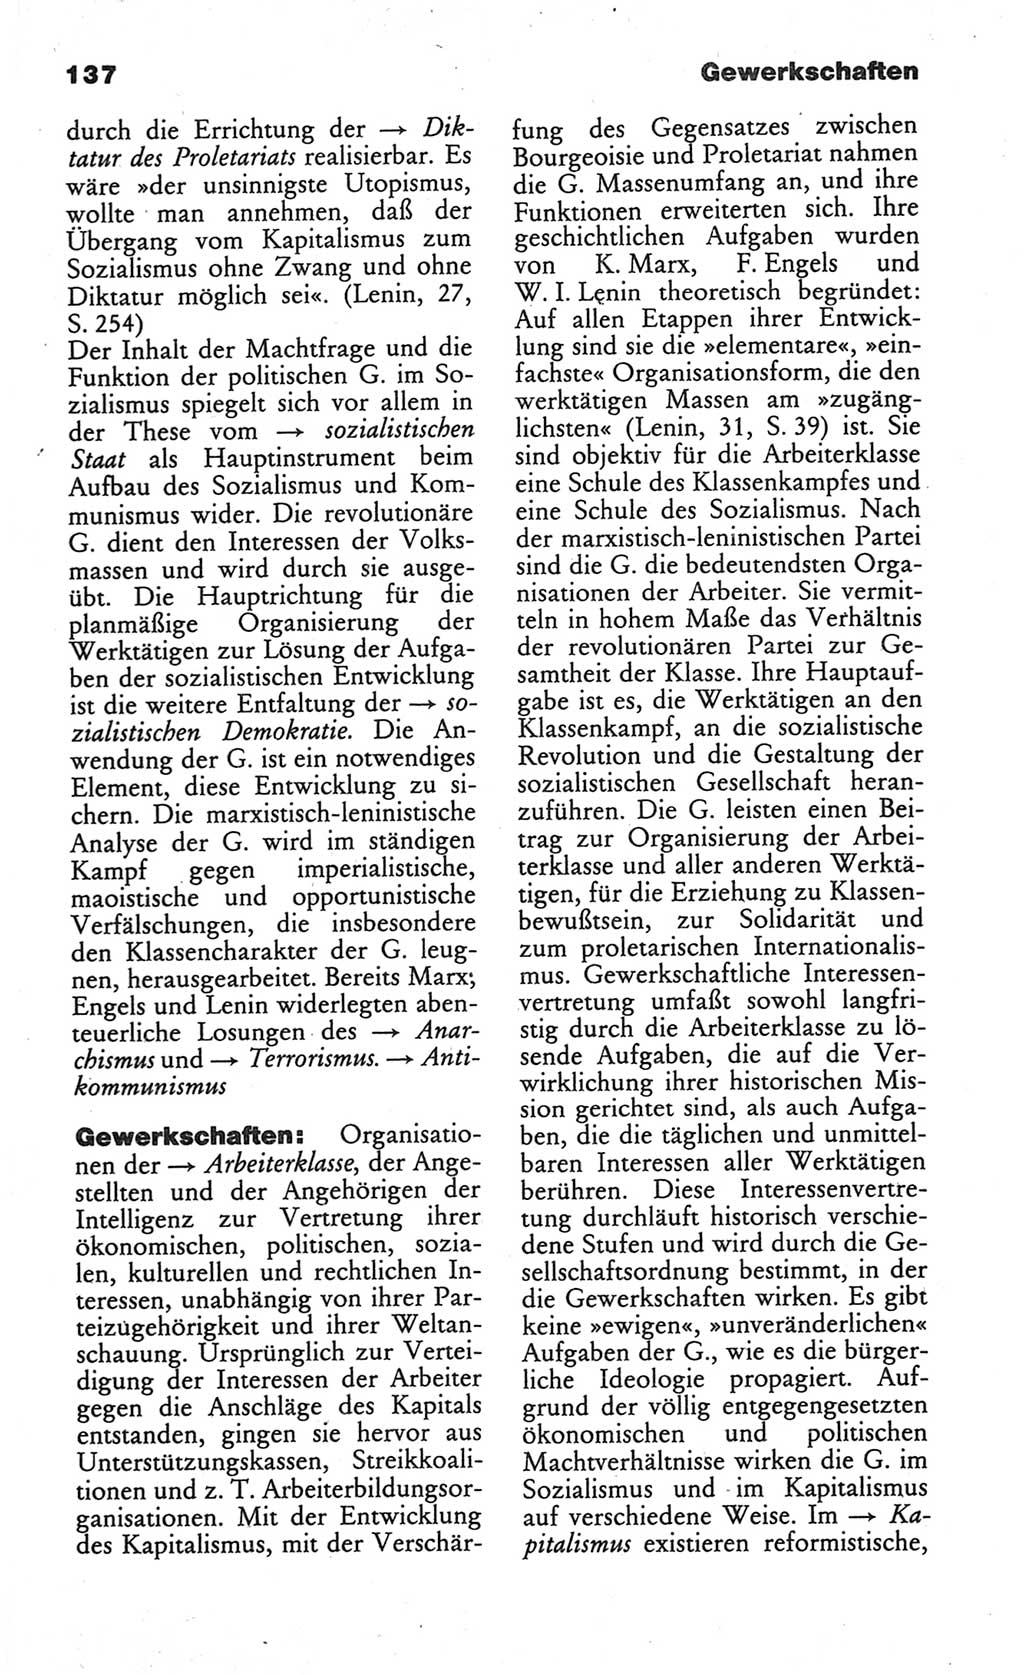 Wörterbuch des wissenschaftlichen Kommunismus [Deutsche Demokratische Republik (DDR)] 1984, Seite 137 (Wb. wiss. Komm. DDR 1984, S. 137)